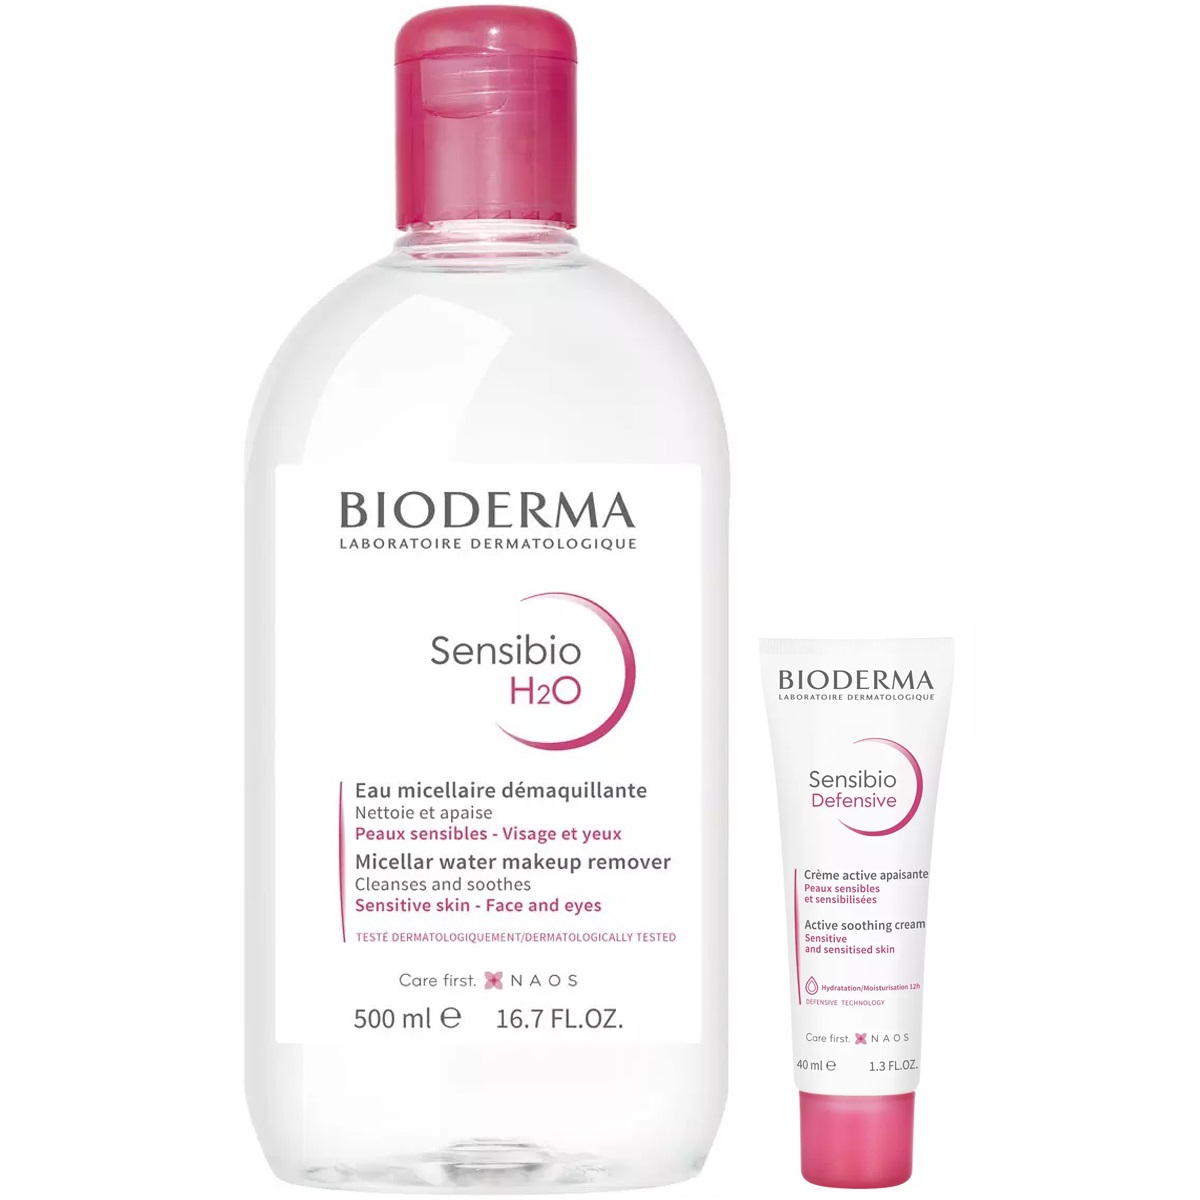 Bioderma Набор для чувствительной кожи: мицеллярная вода, 500 мл + крем, 40 мл (Bioderma, Sensibio) вода мицеллярная для нормальной и чувствительной кожи лица н2о ar sensibio bioderma биодерма 250мл